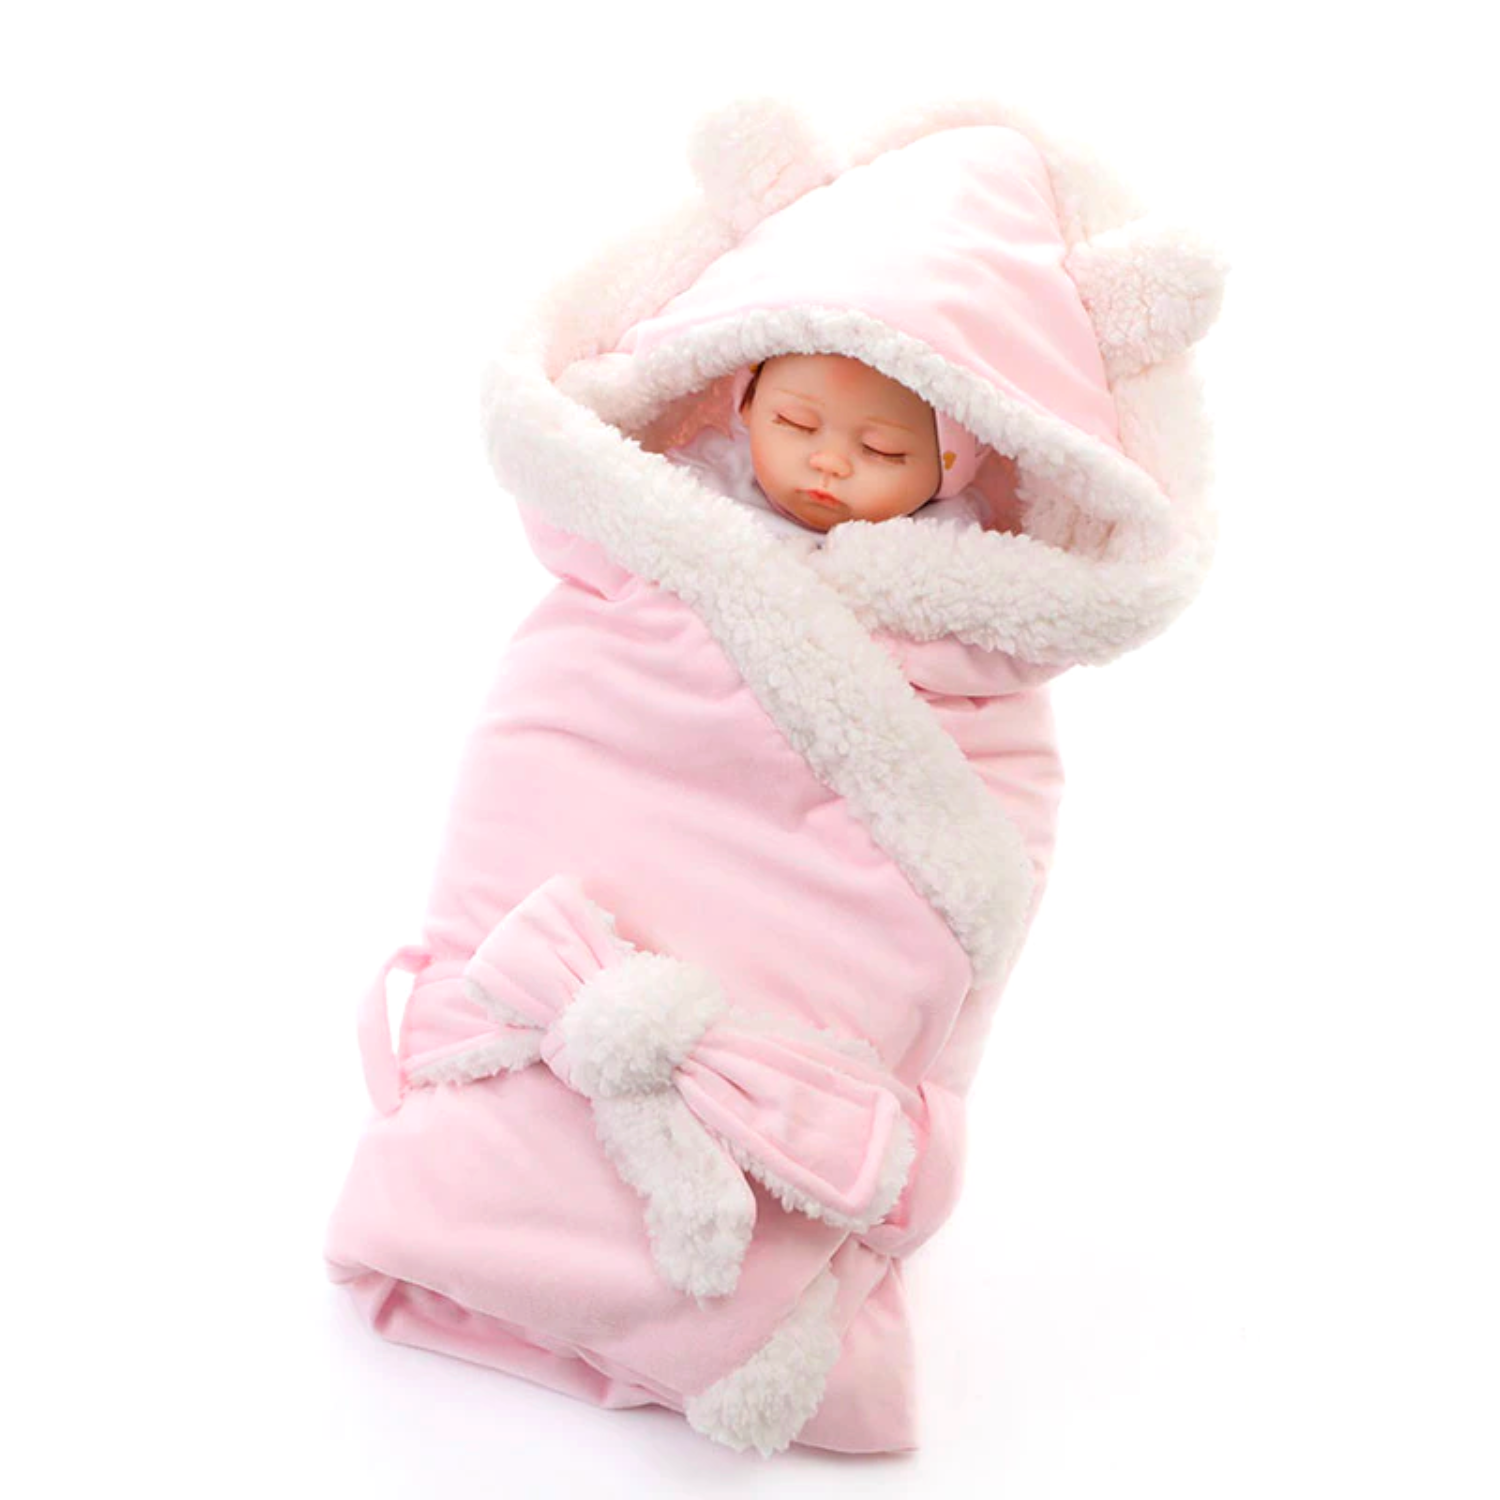 blanket wrap double layer fleece baby swaddle sleeping bag for newborns